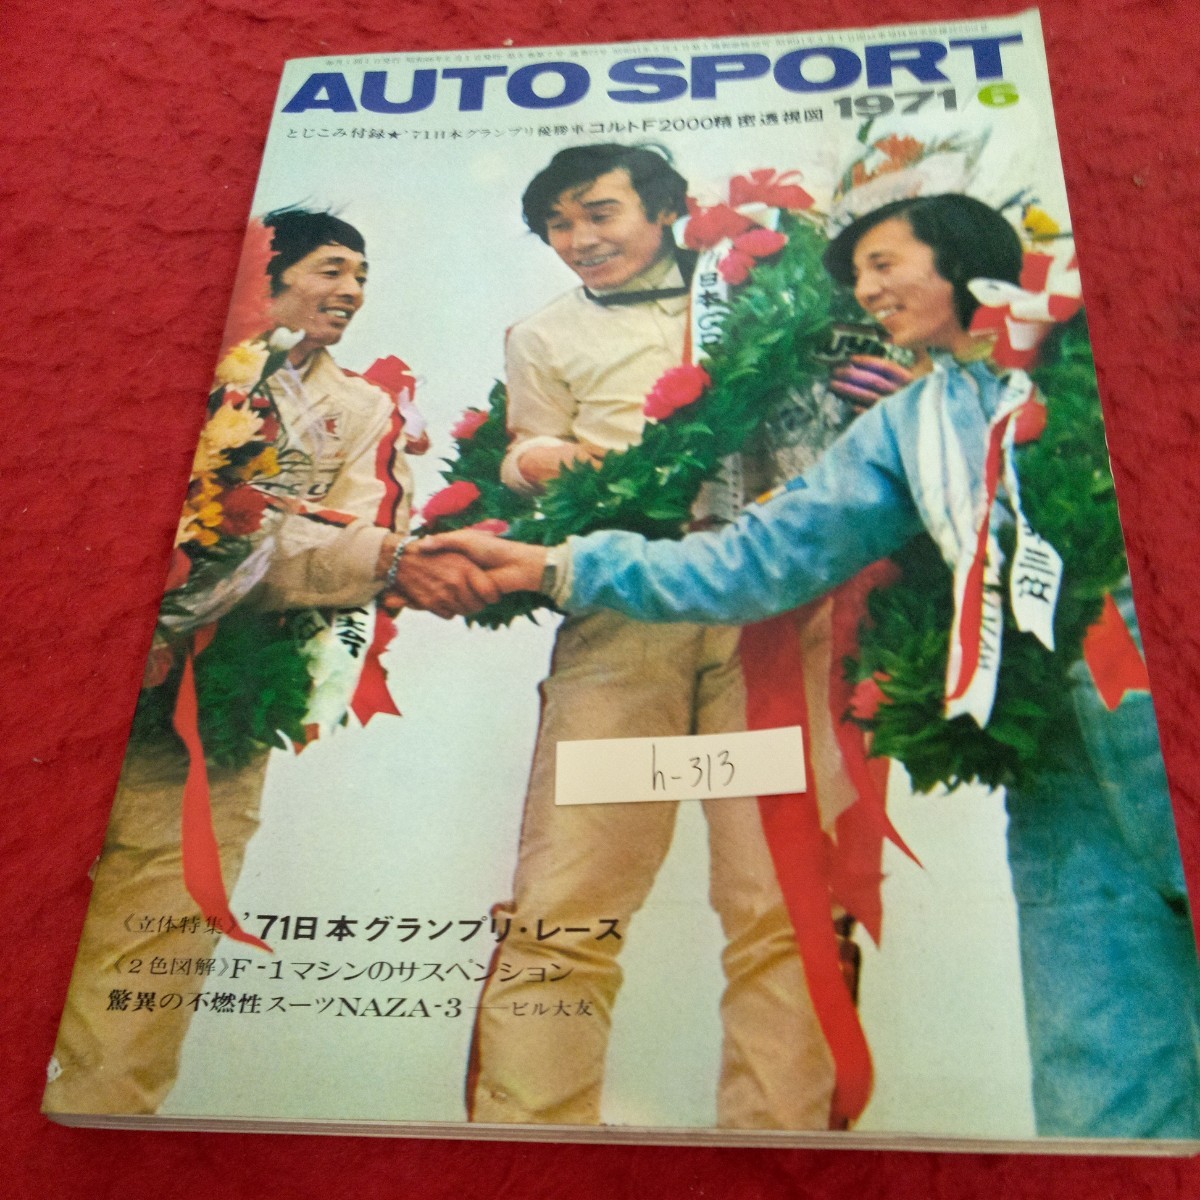 h-313 オートスポーツ 1971年発行 6月号 '71日本グランプリ・レース F-1マシンのサスペンション など 三栄書房※1_傷、汚れあり